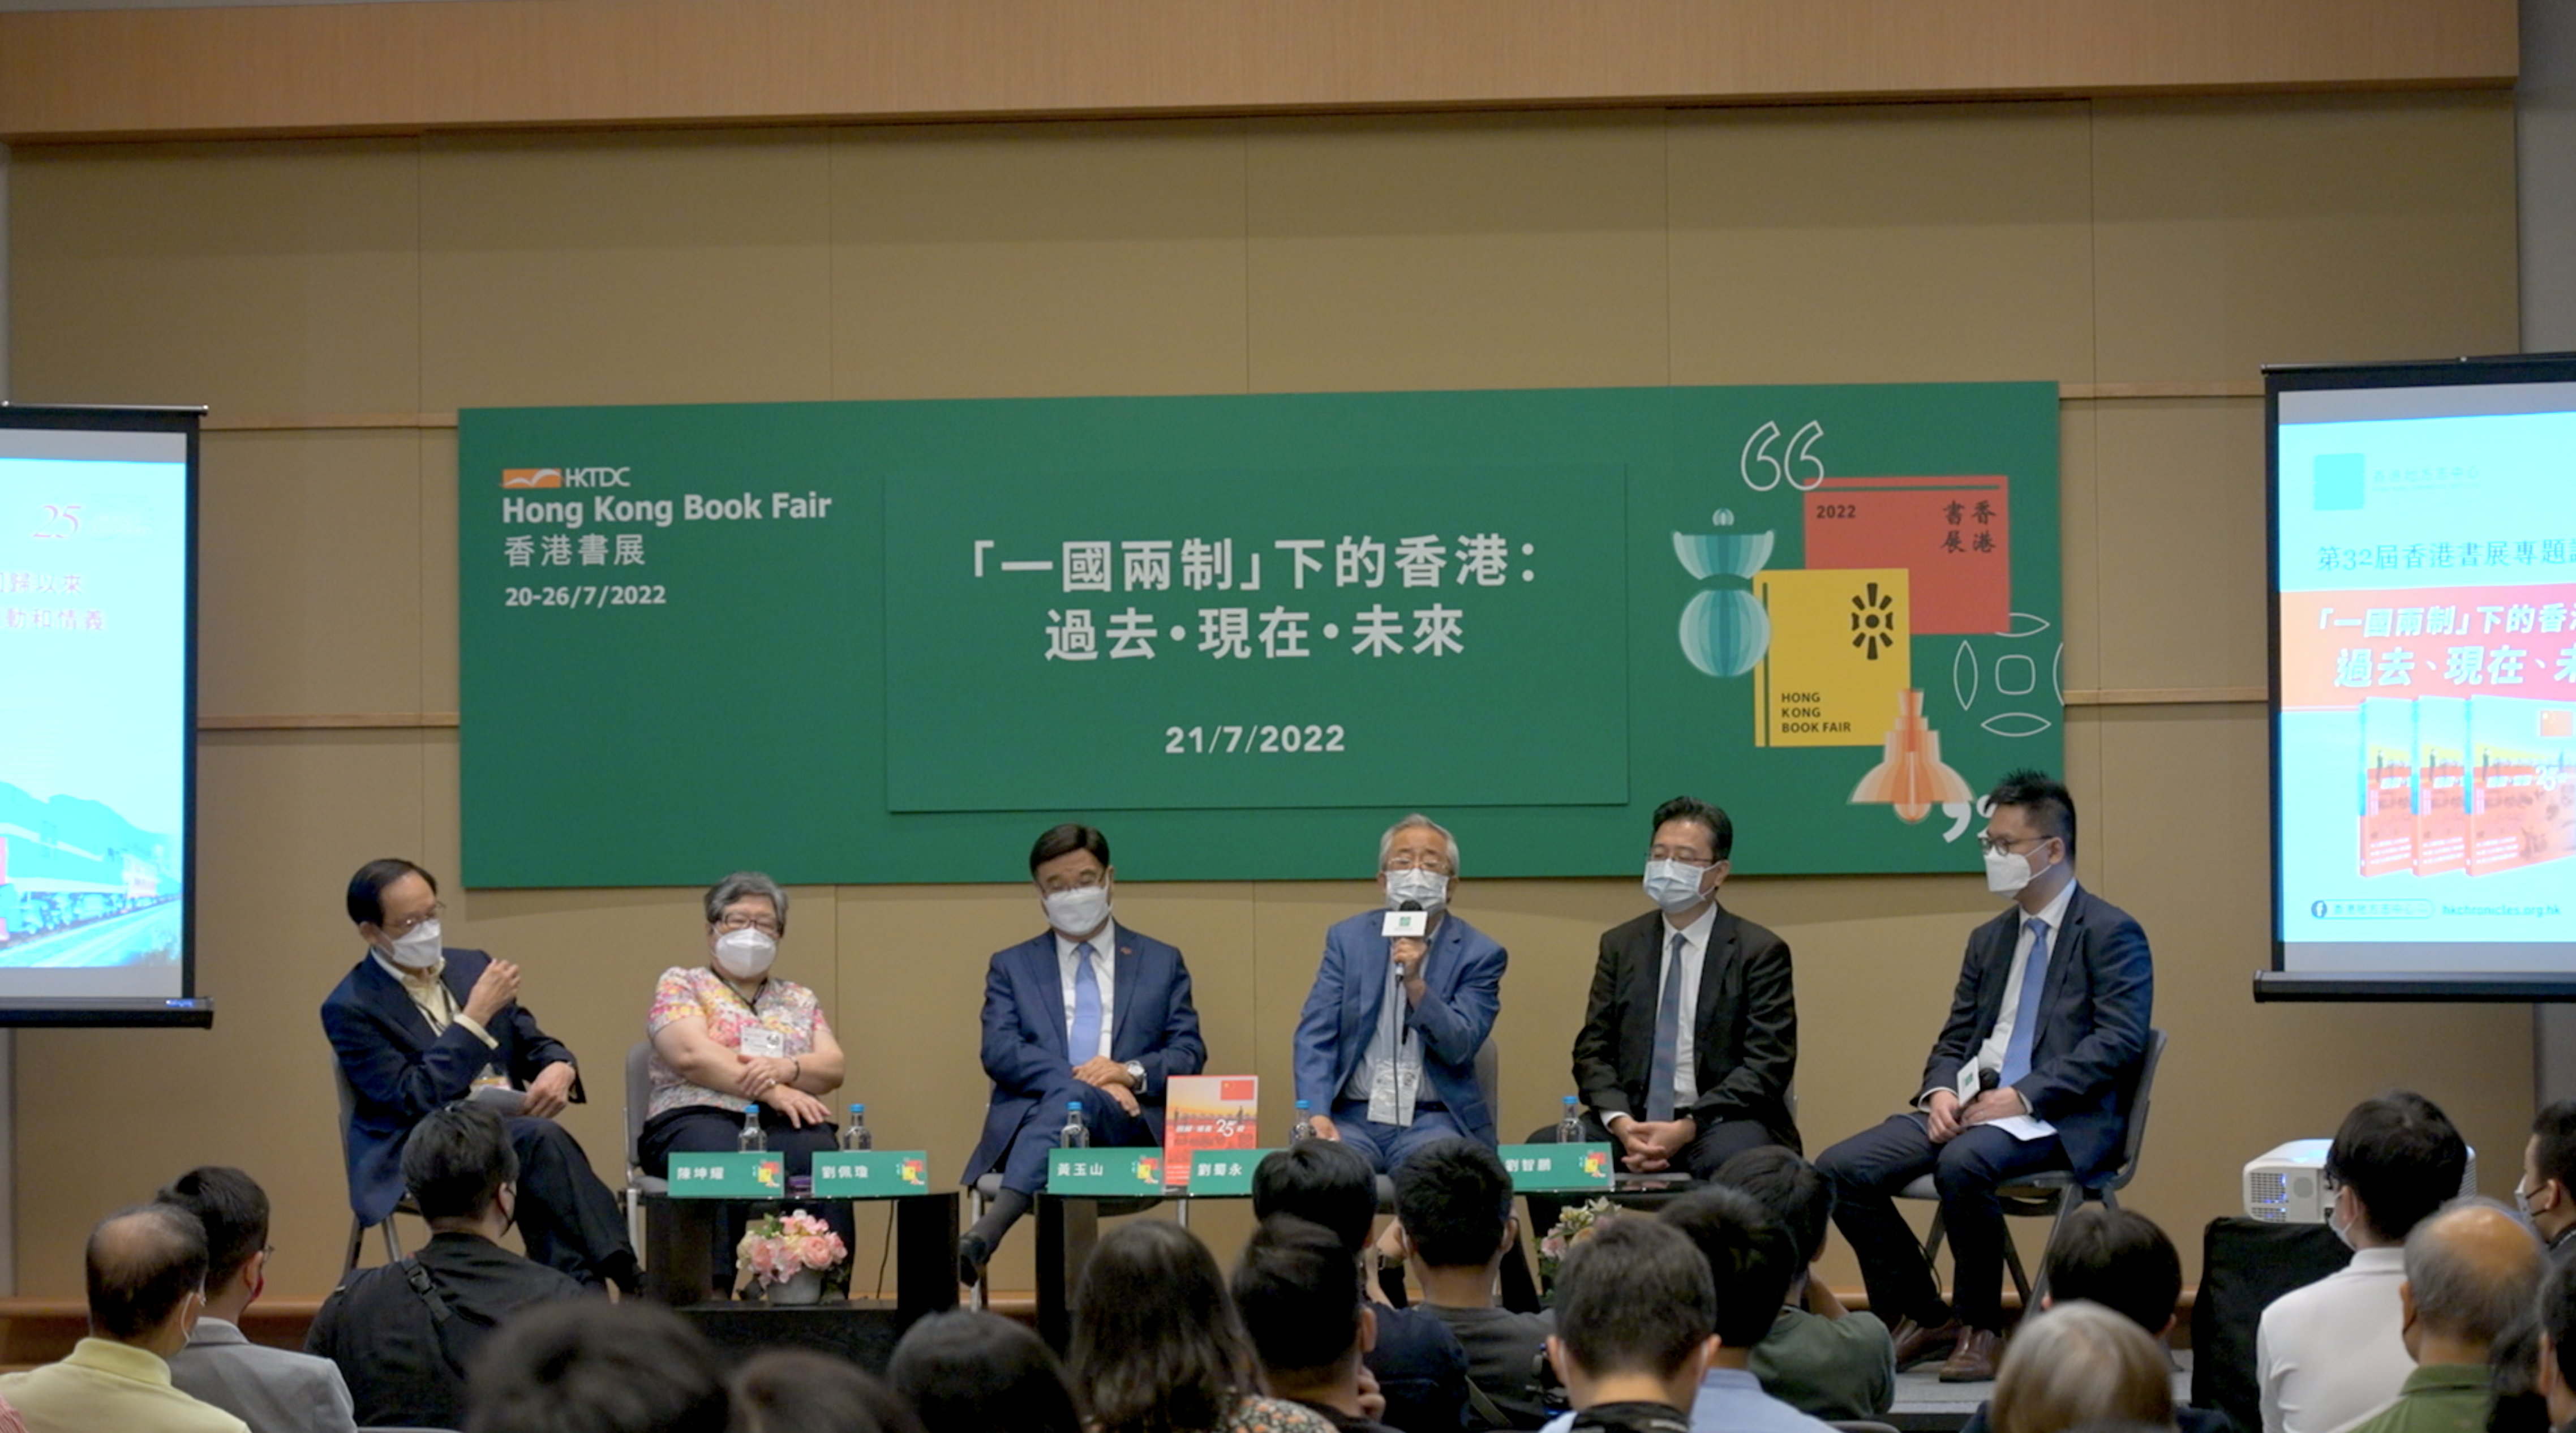 刘蜀永教授出席香港书展主题讲座